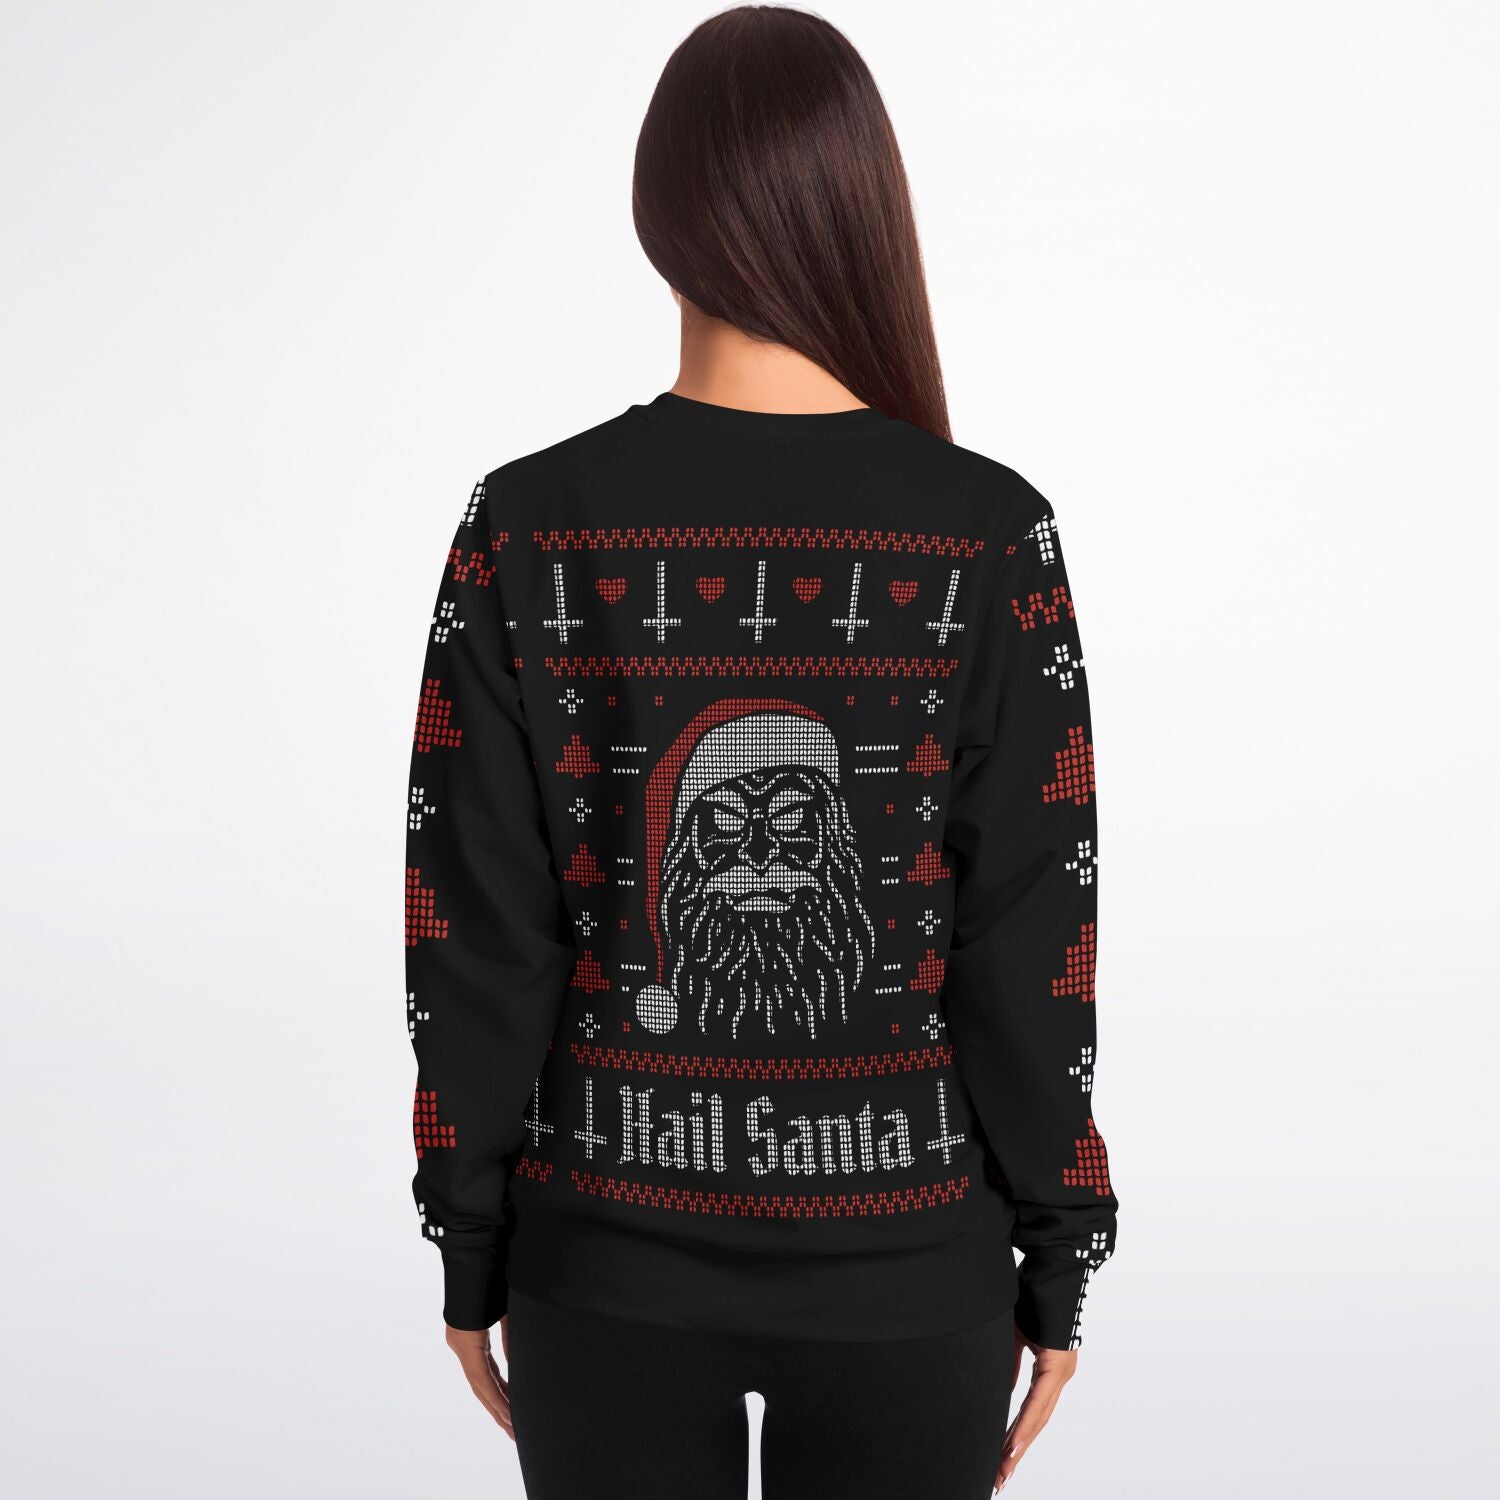 Hail Santa Fashion Sweatshirt